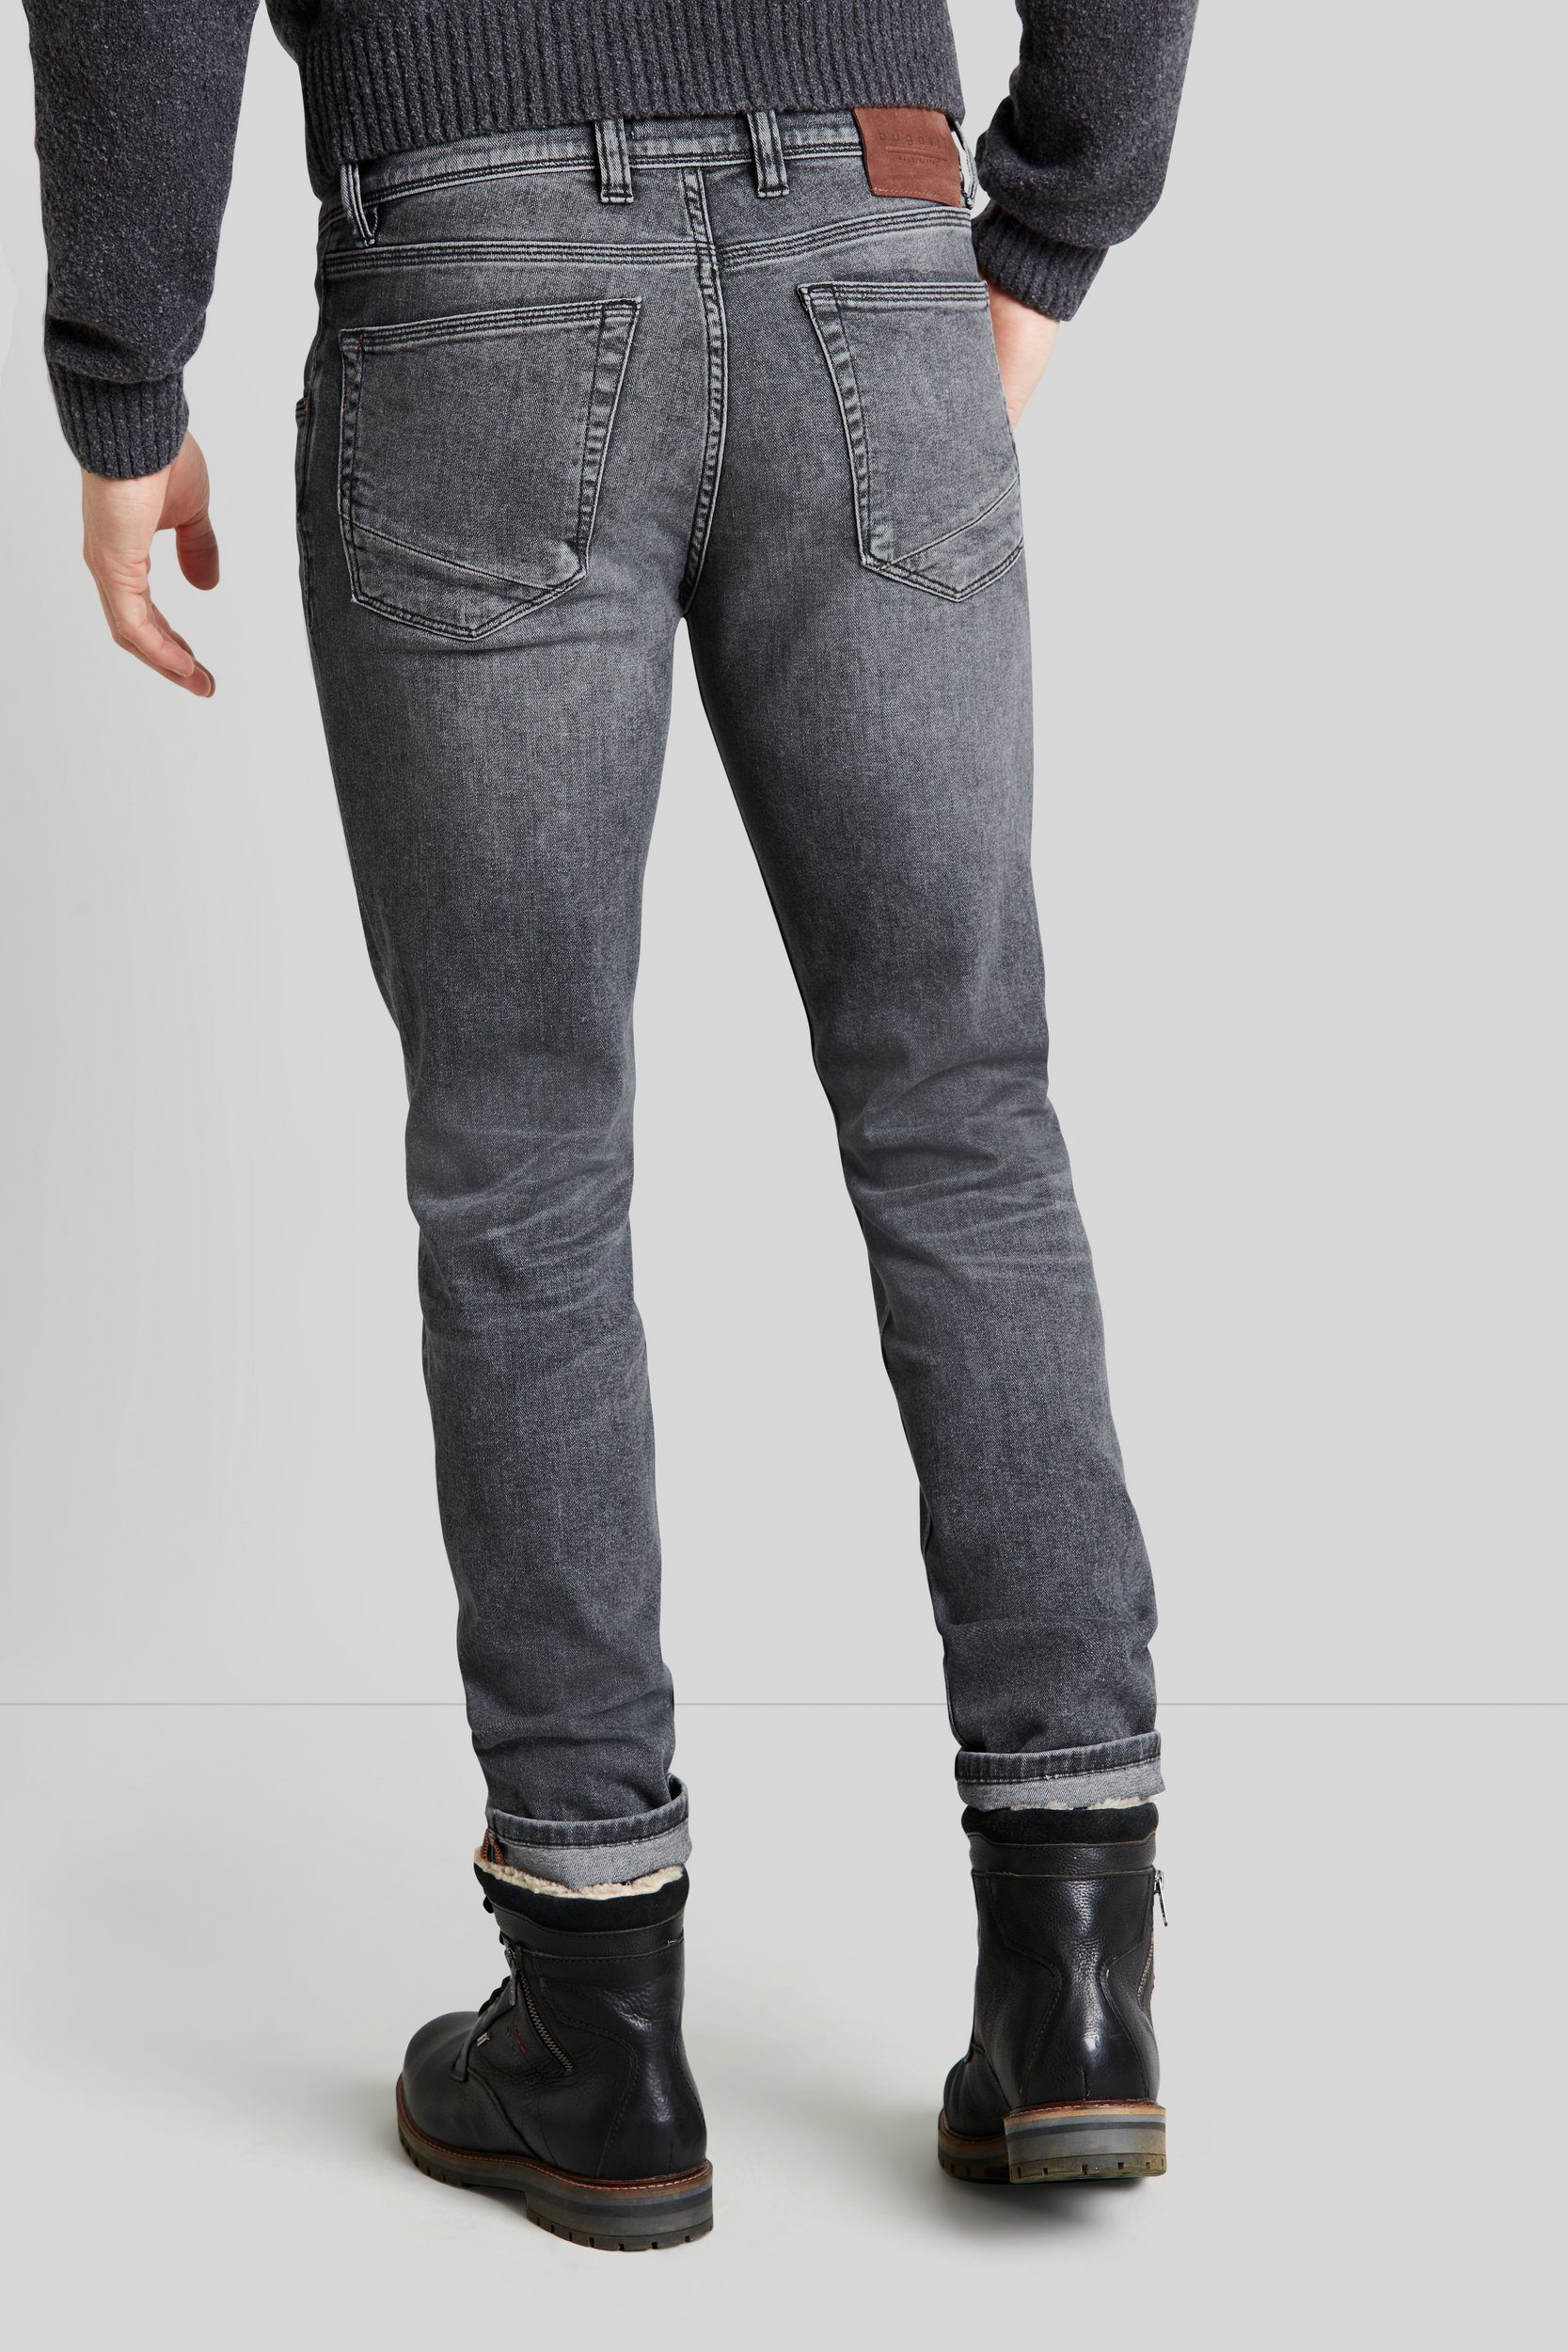 bugatti 5-Pocket-Jeans besonders weicher Haptik mit hellgrau